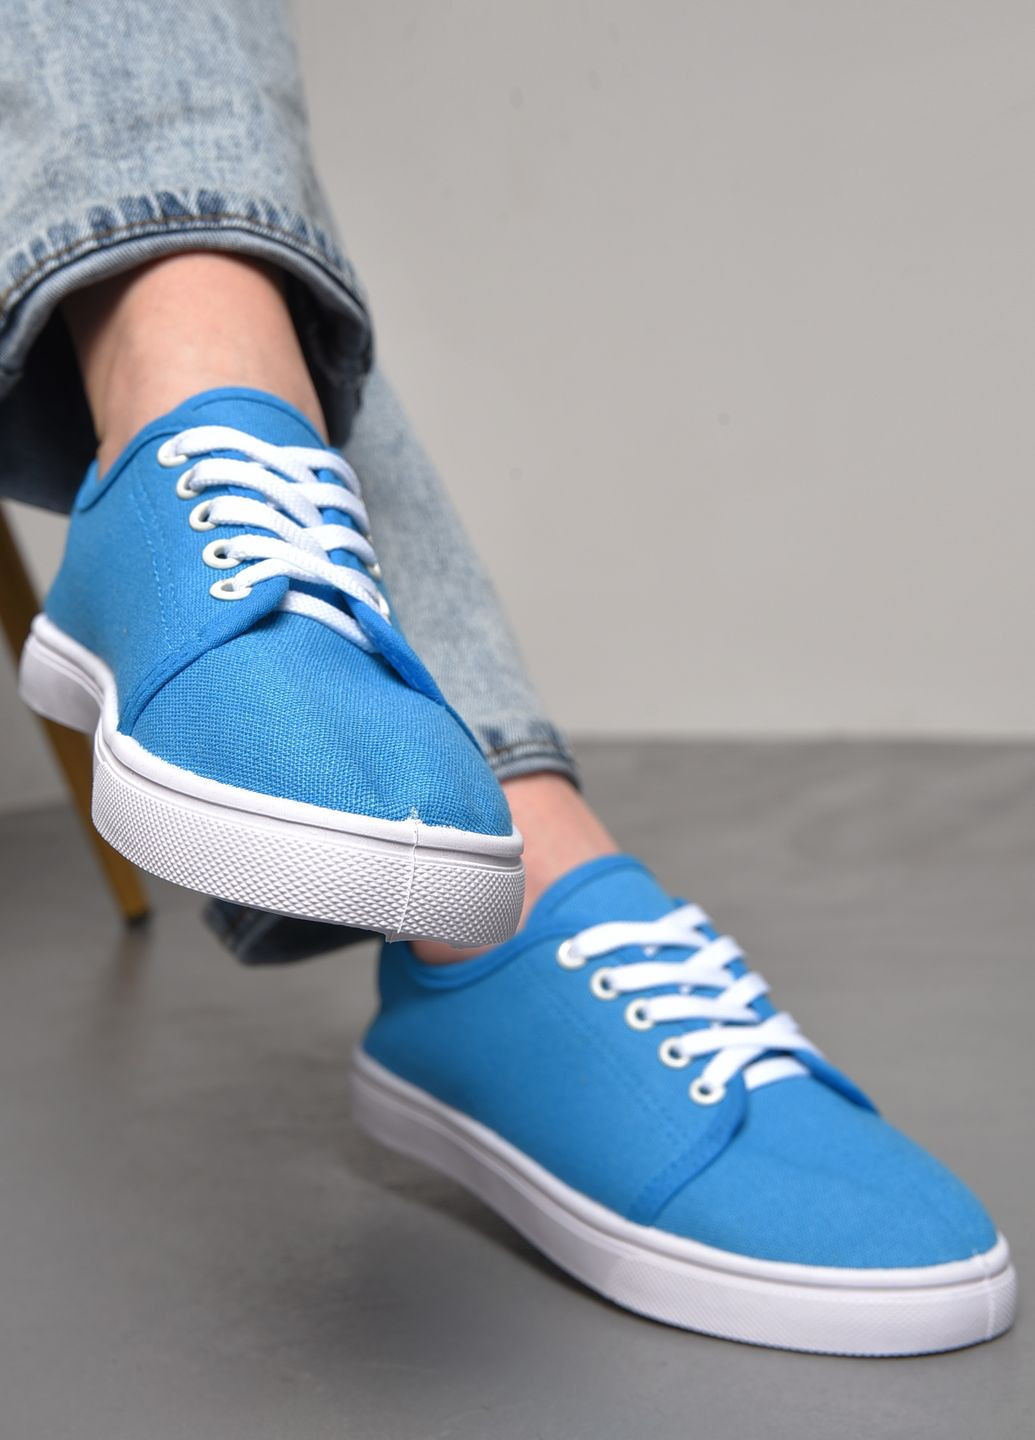 Голубые мокасины женские голубого цвета на шнуровке Let's Shop